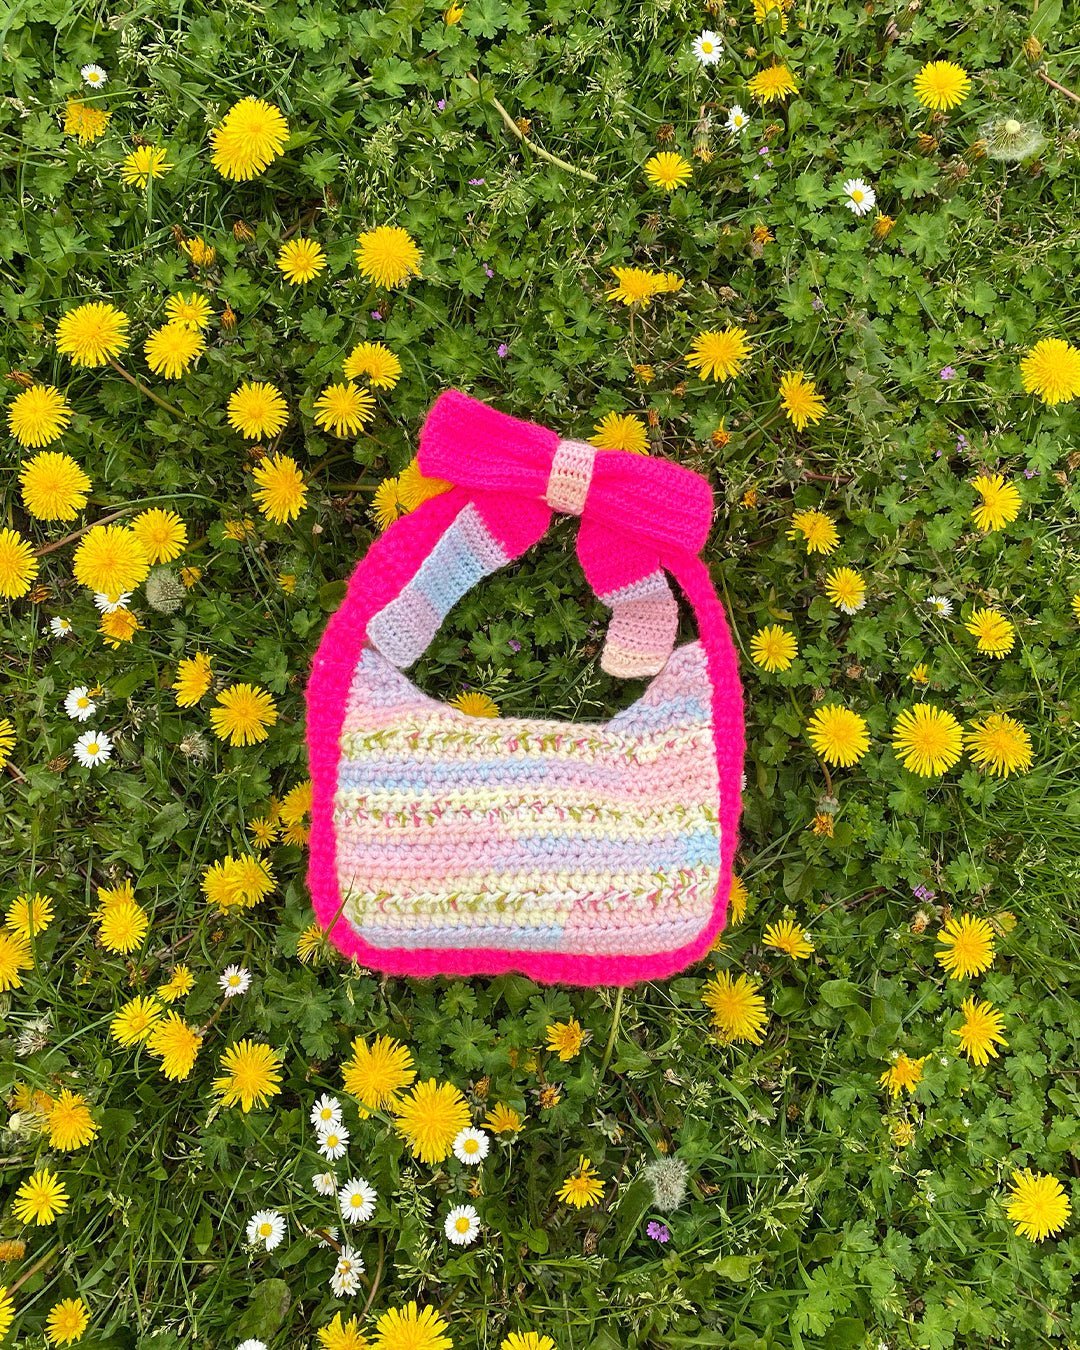 Crochet Plush Bag | Free Crochet Pattern for Beginners - YouTube